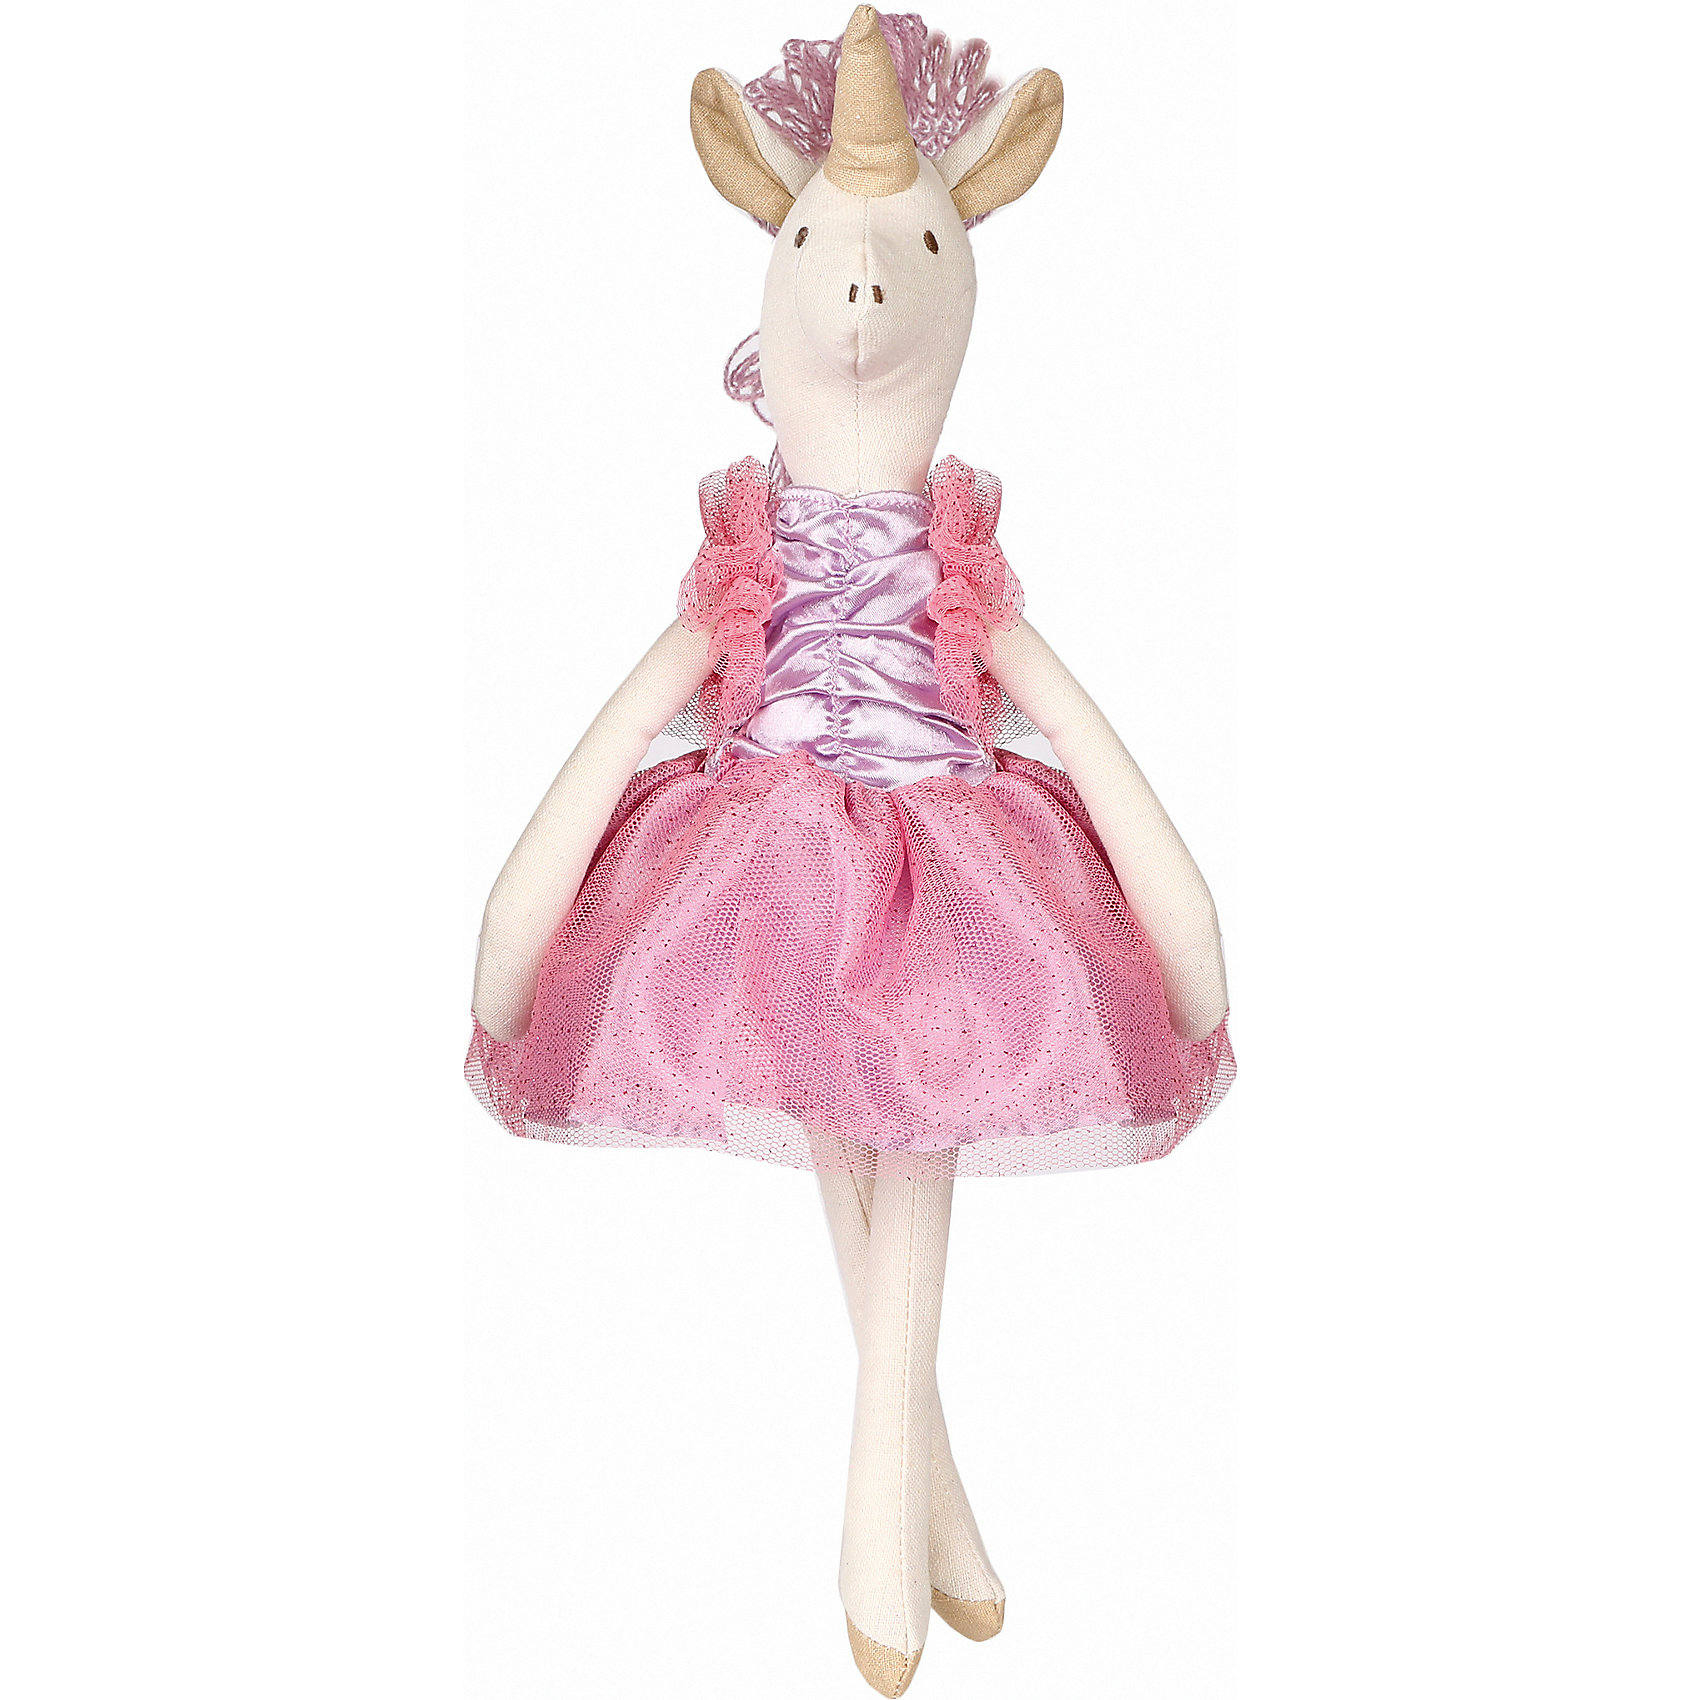 Мягкая игрушка "Единорог тильда", 34 см, бело-розовая Angel Collection 12969812